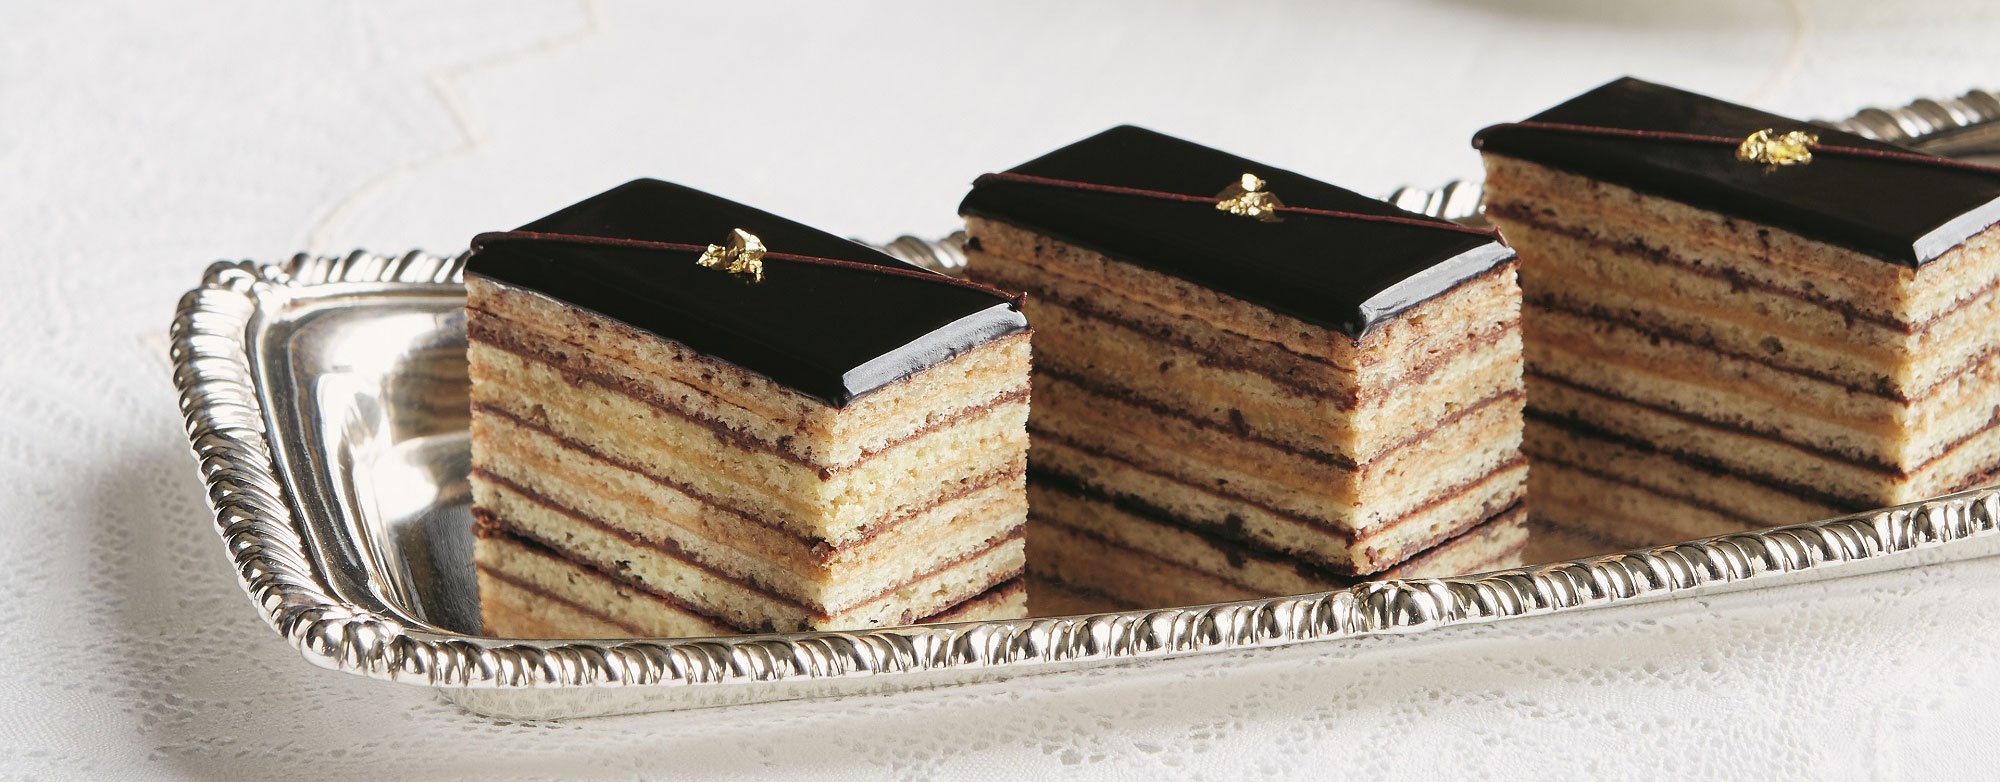 Gâteau Opéra from the 'Royal Teas' cookbook